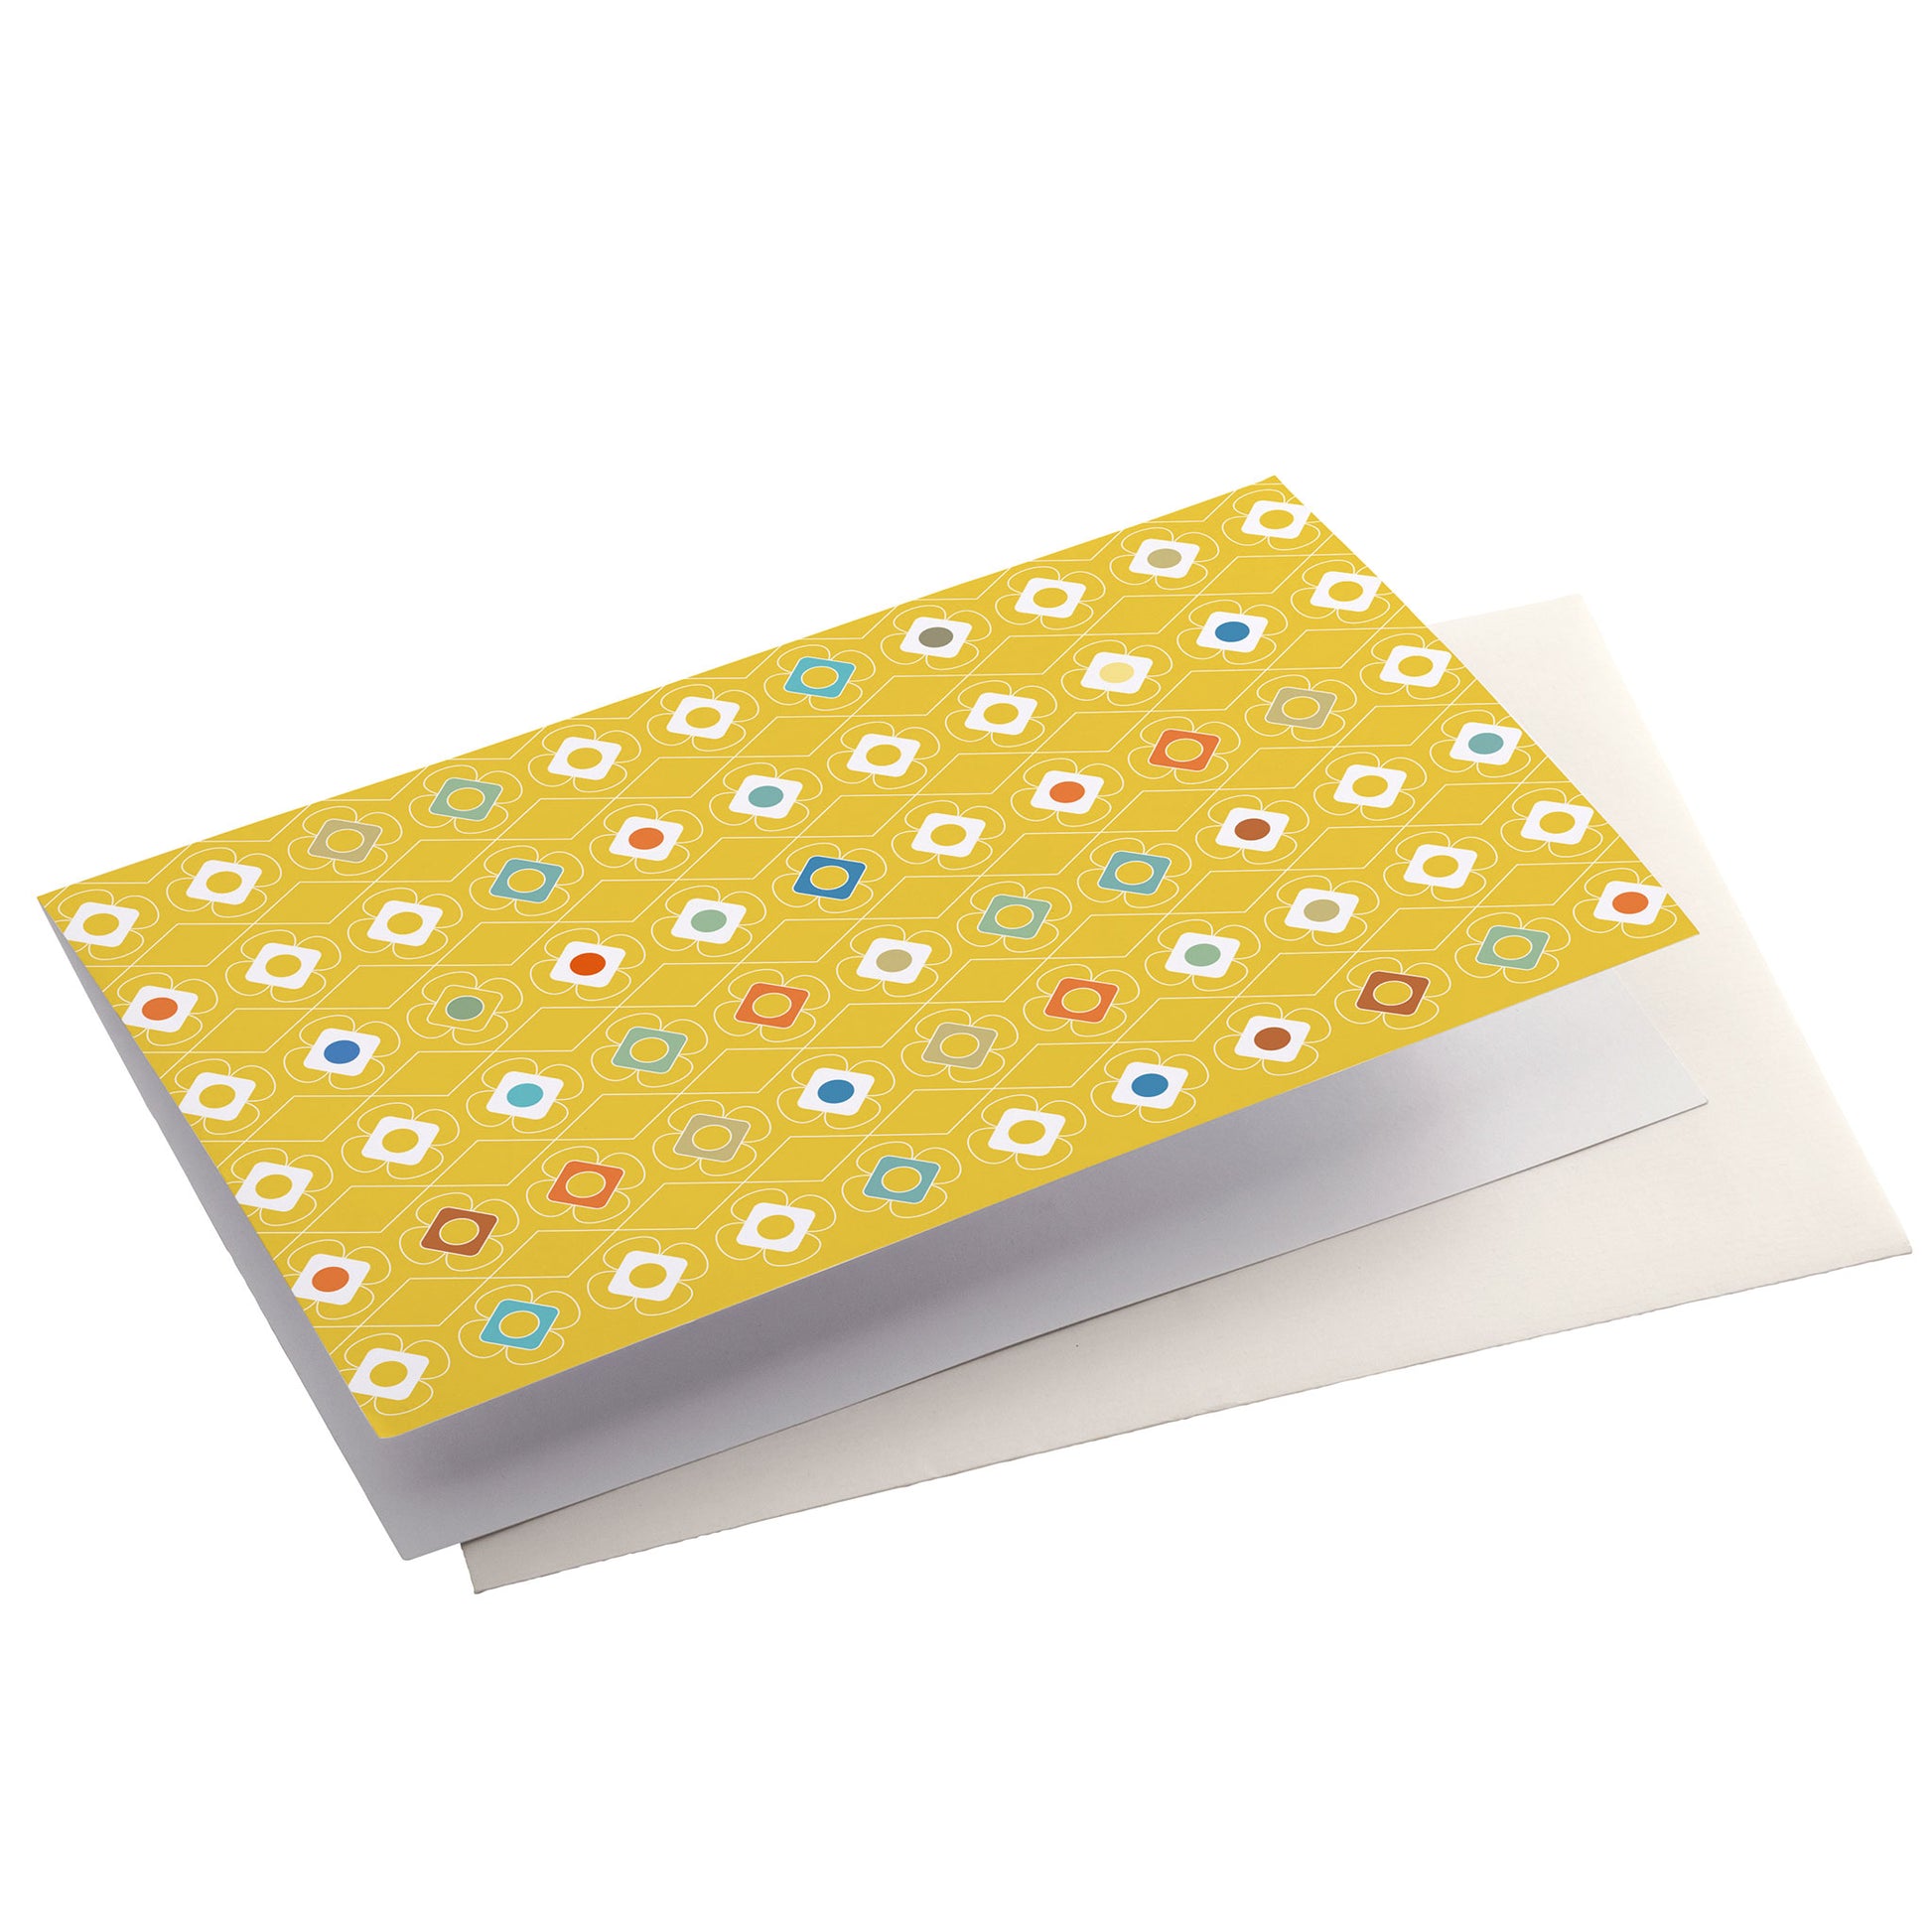 Productafbeelding, wenskaart "kleur carrousel geel", zijaanzicht liggend met een envelop